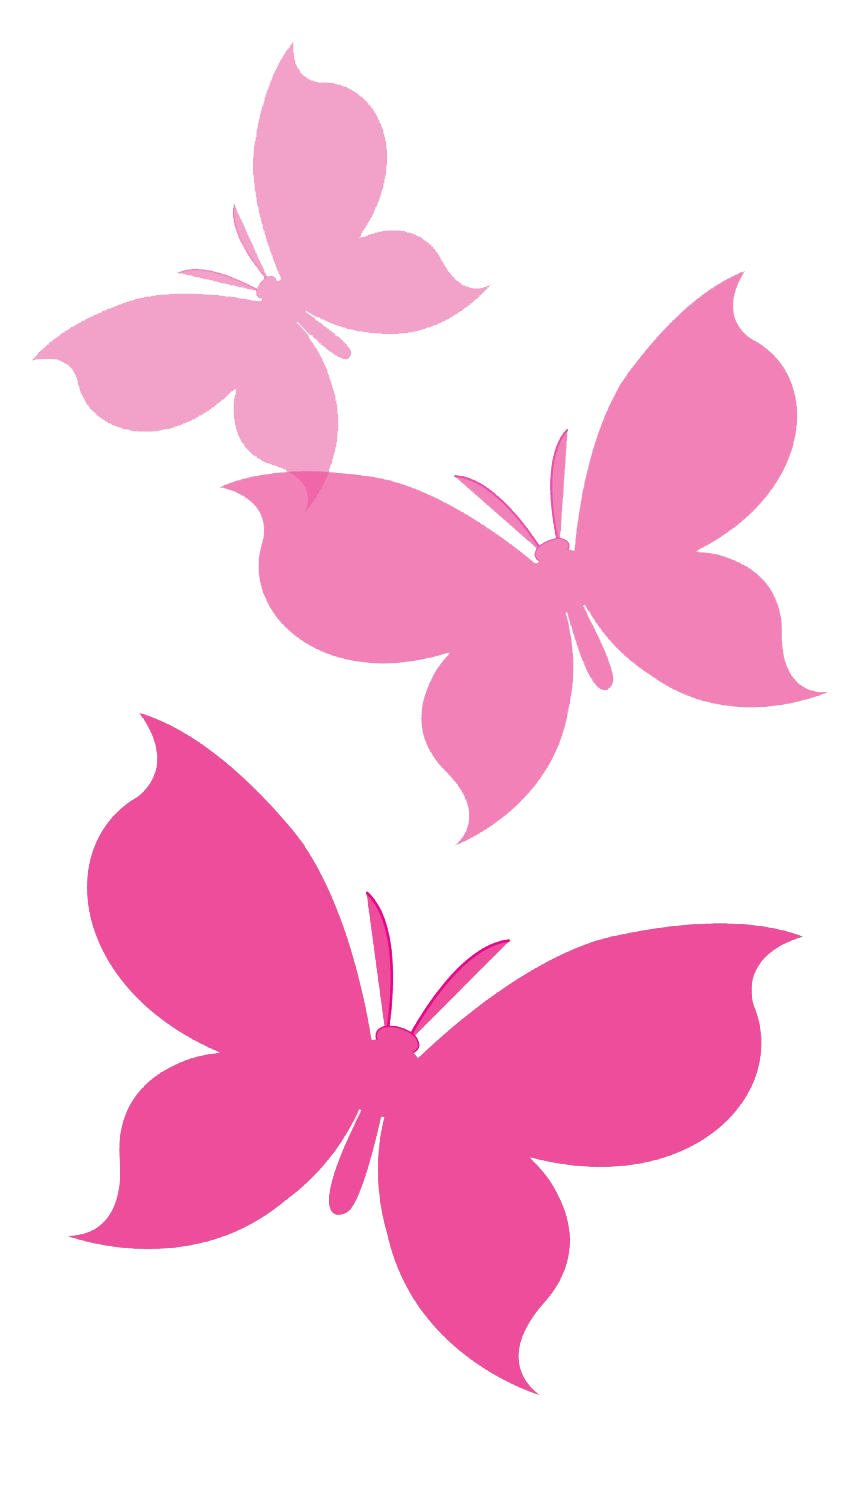 Fliegender rosa Schmetterling PNG Hochwertiges Bild